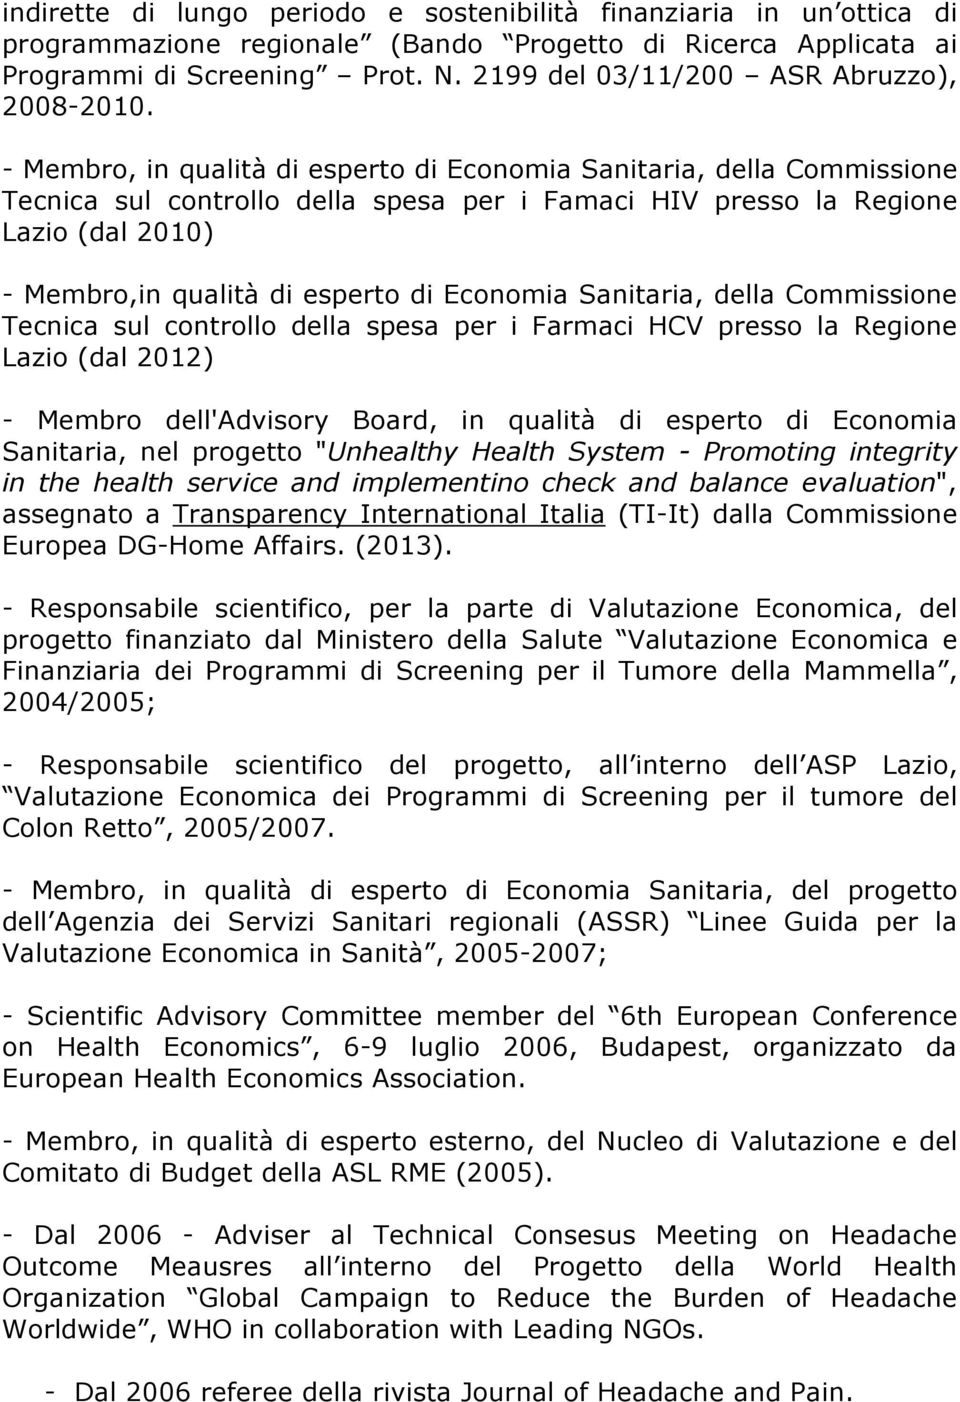 - Membro, in qualità di esperto di Economia Sanitaria, della Commissione Tecnica sul controllo della spesa per i Famaci HIV presso la Regione Lazio (dal 2010) - Membro,in qualità di esperto di